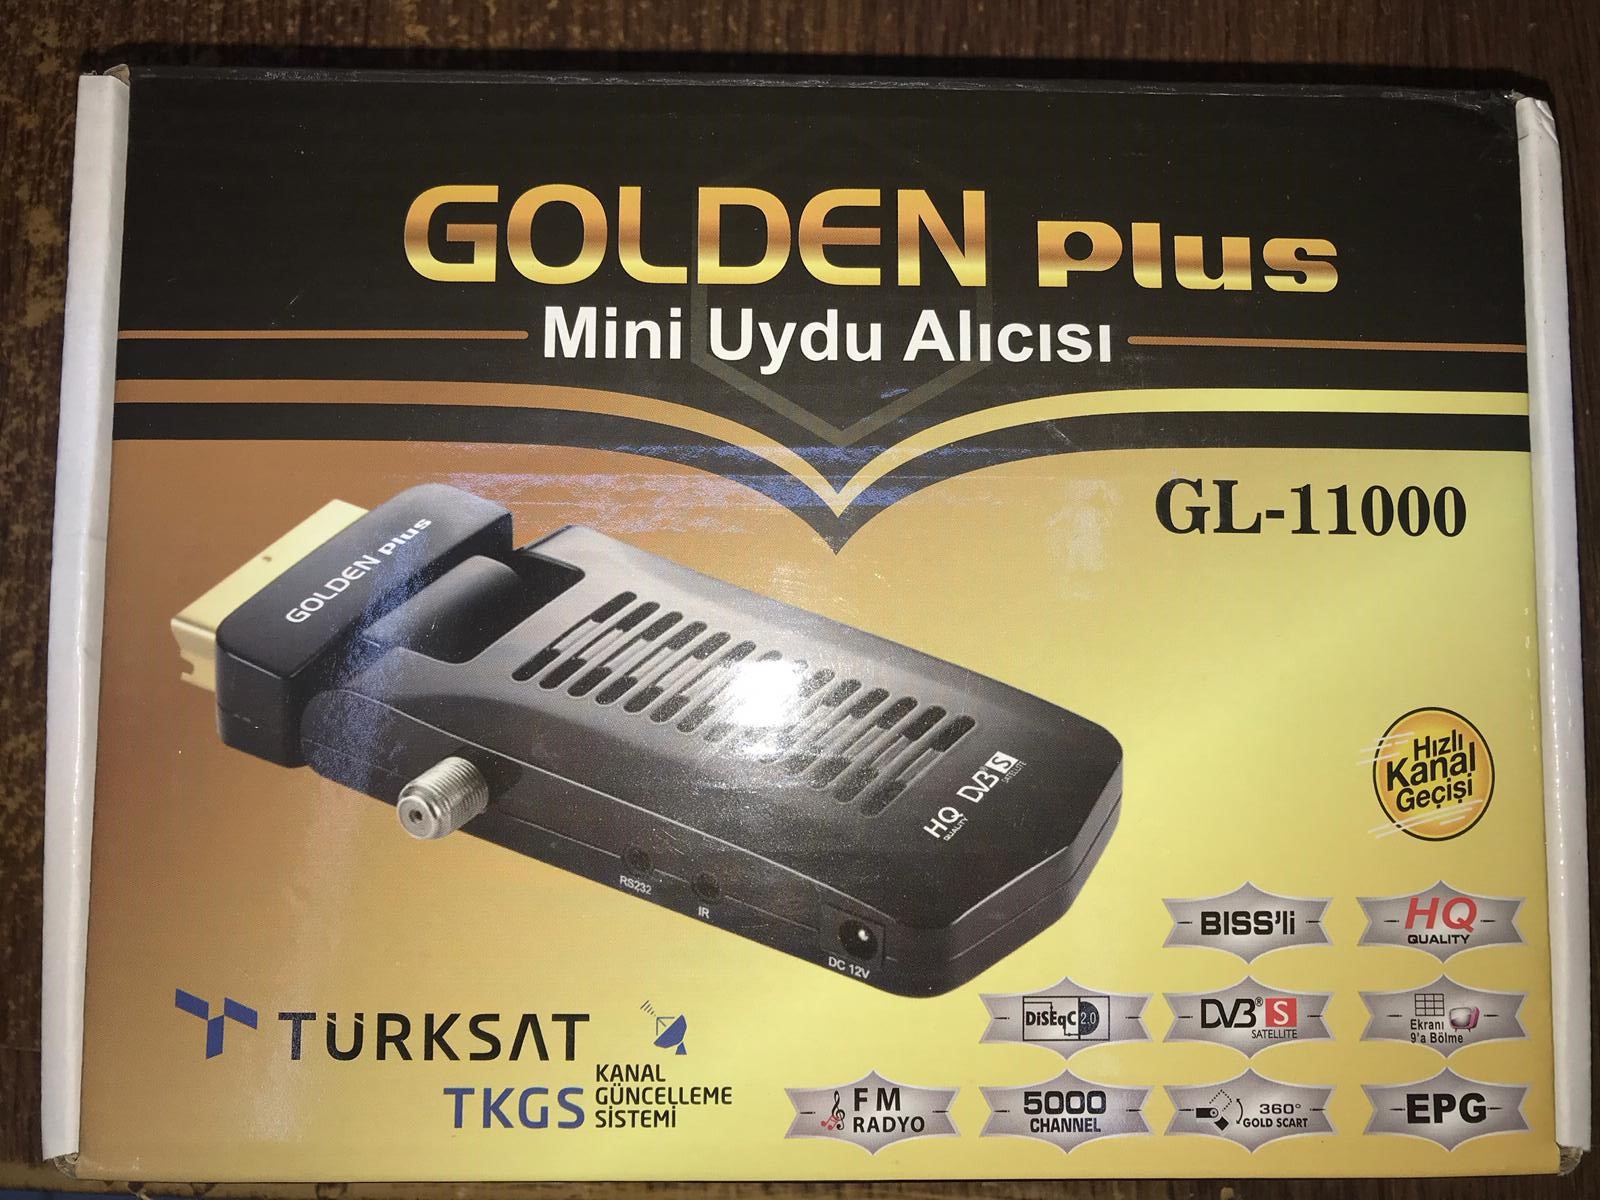 Uydu Alıcısı Mini Scart (SD) Golden Plus DİJİTAL UYDU ALICISI